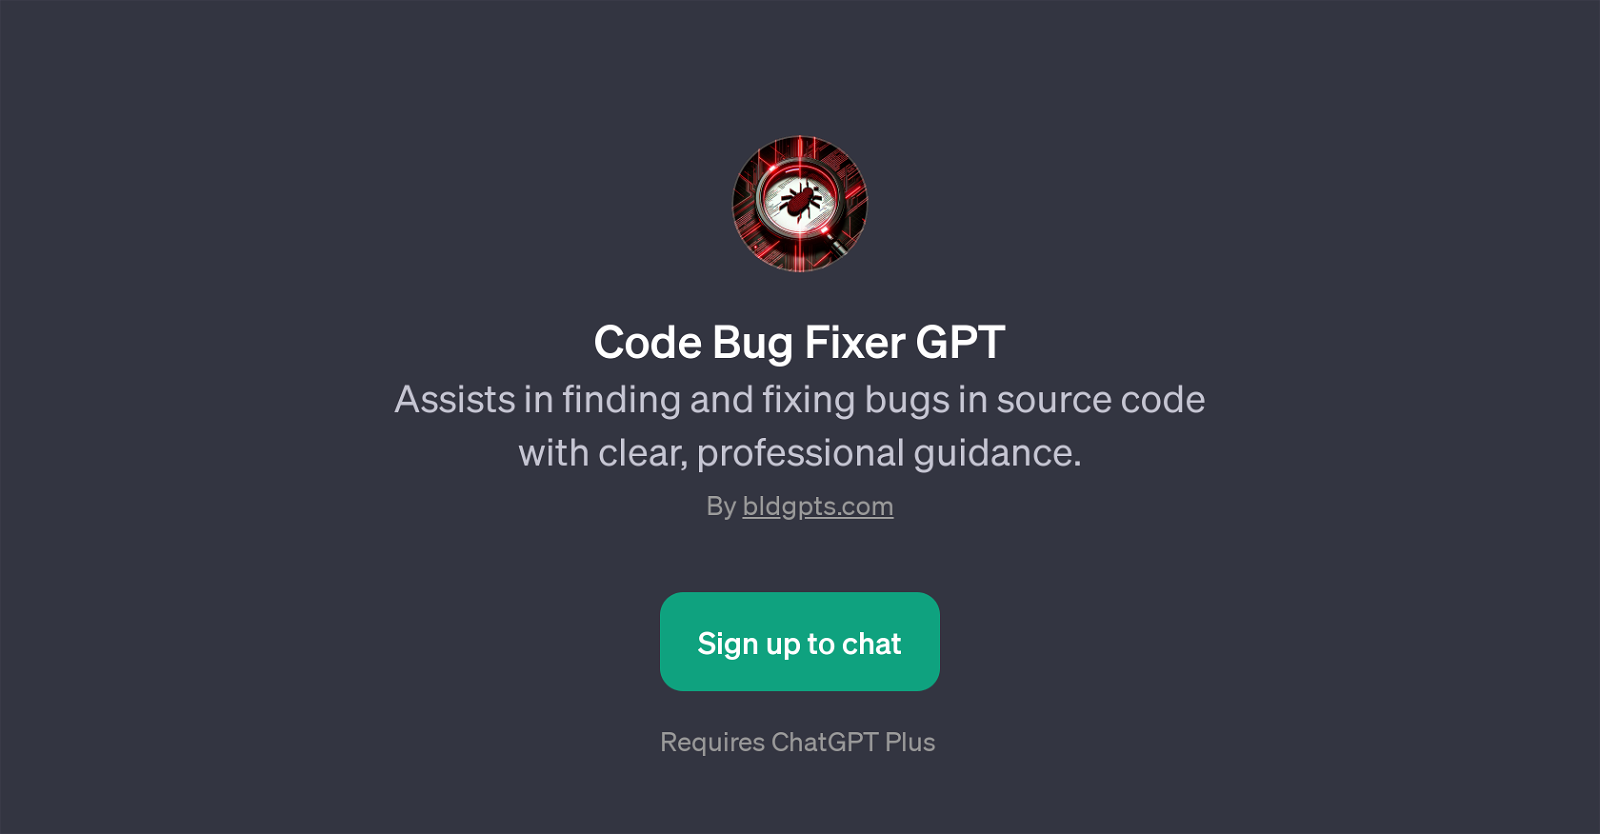 Code Bug Fixer GPT website